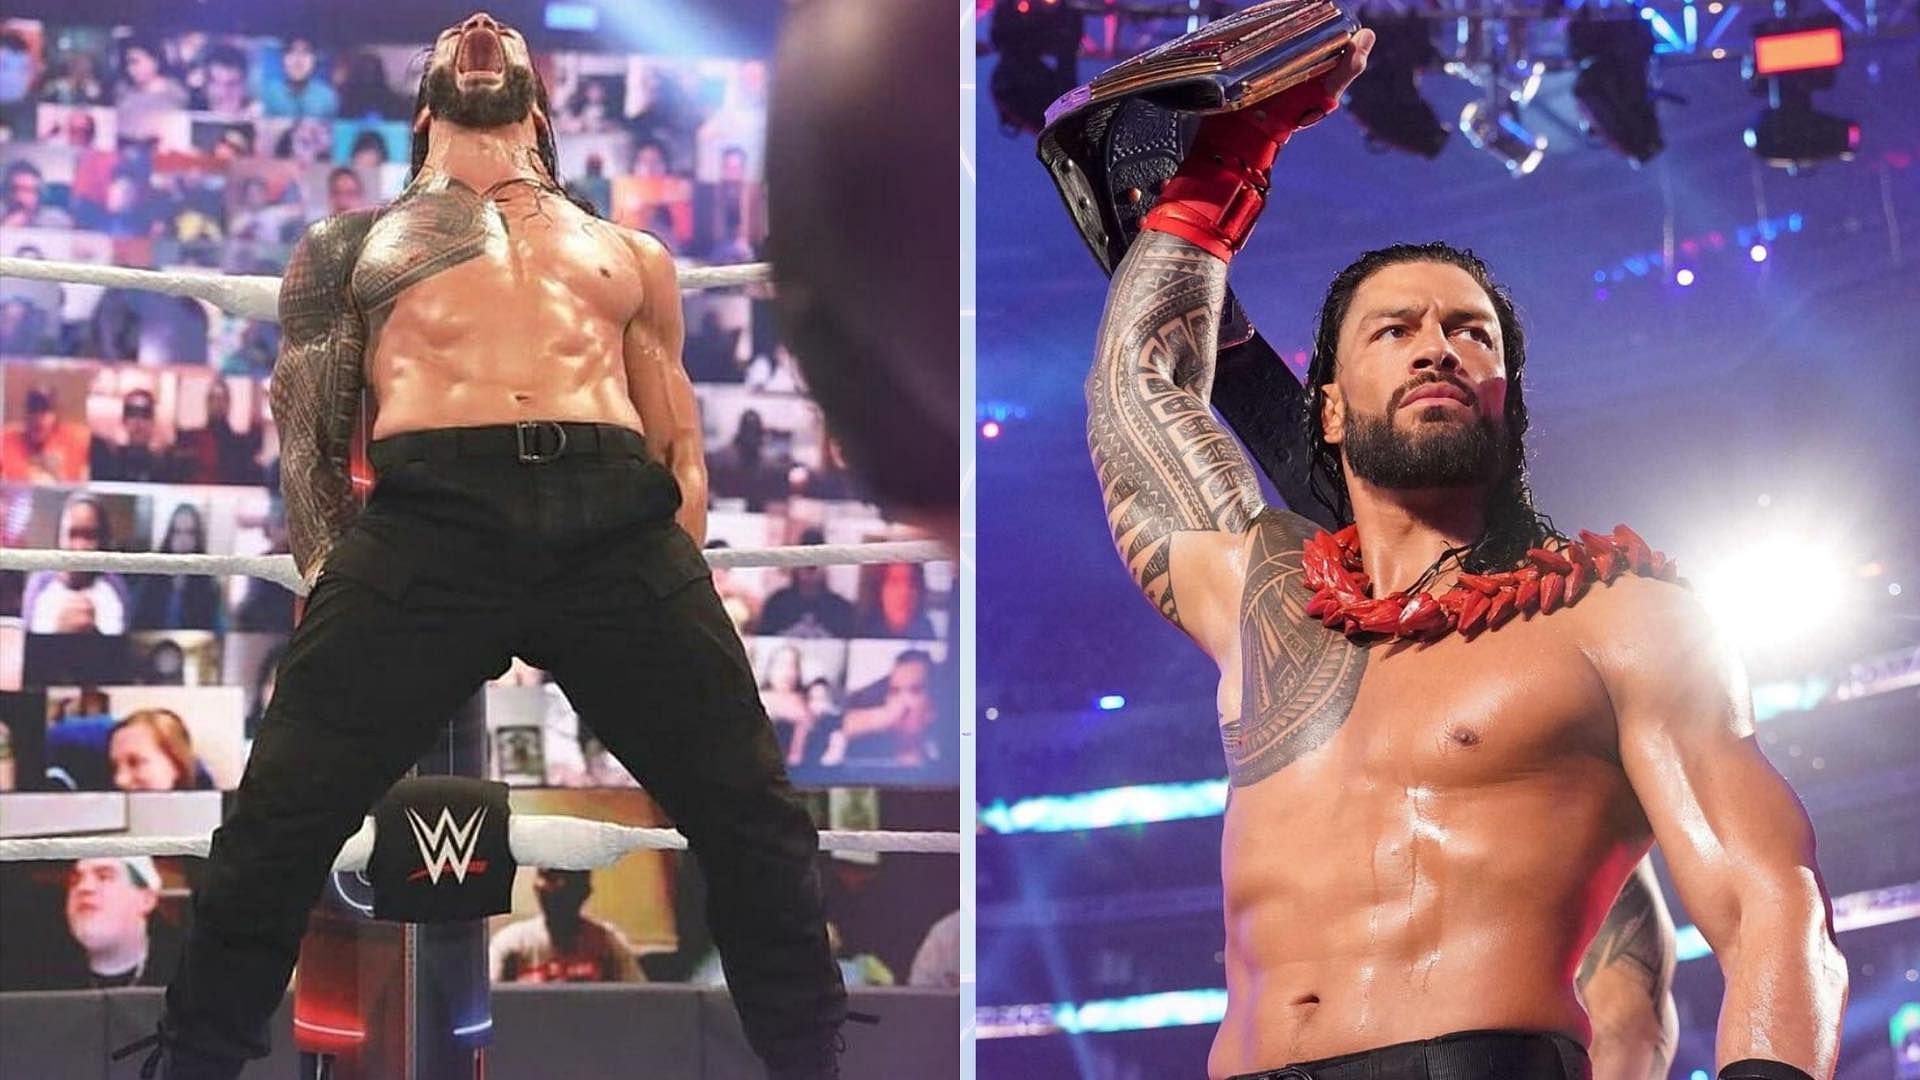 Roman Reigns is WWE